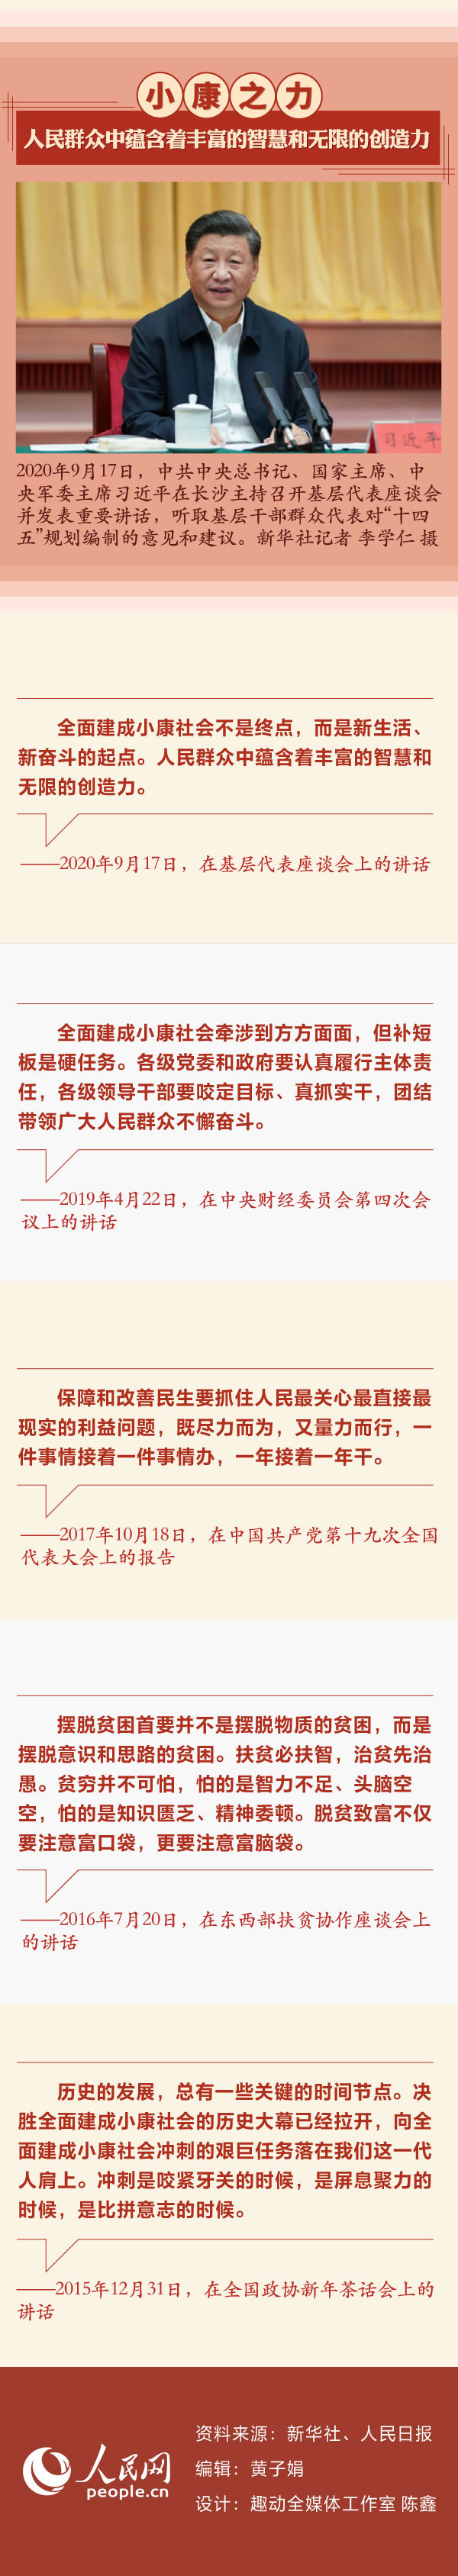 习近平这些话给出答案3 人民网-中国共产党新闻网.jpg